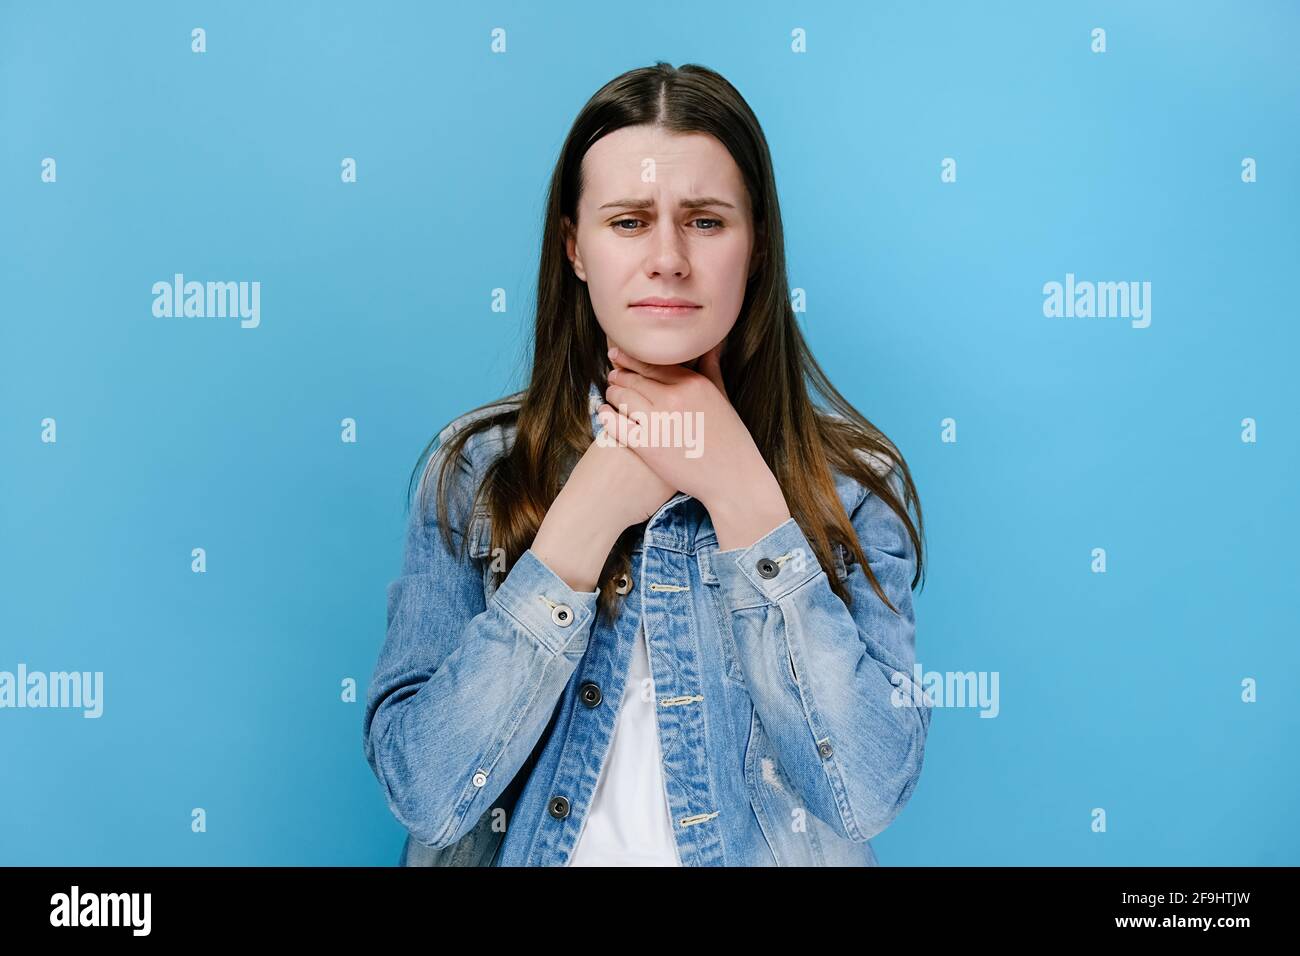 Unglücklich kranke junge Frau berührt den Hals, leidet an Halsschmerzen, hat Asthmaanfall, würgt und grinst Gesicht, isoliert auf blauem Studiohintergrund Stockfoto